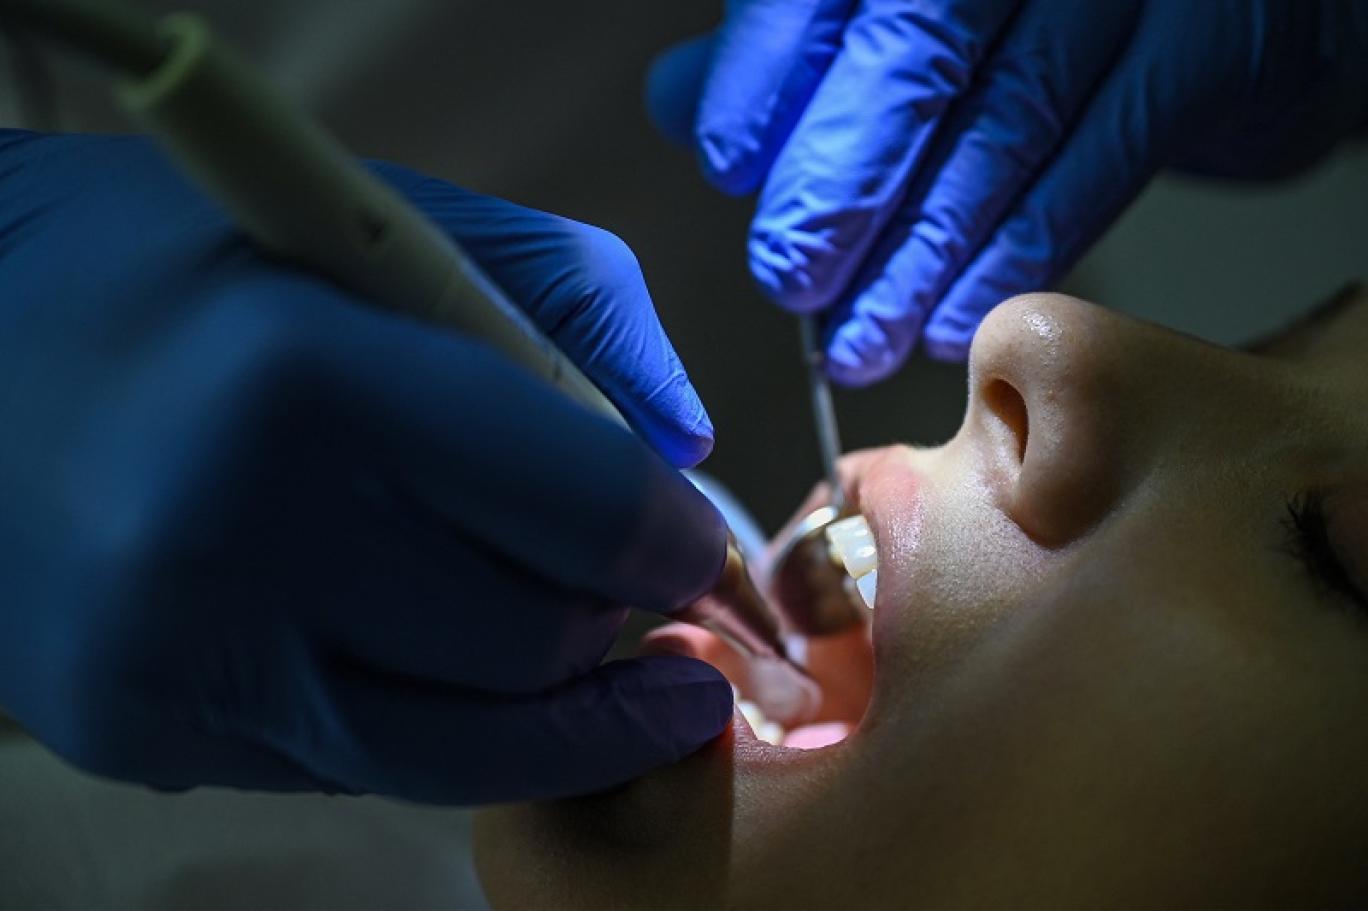 ضبط 21 طبيب أسنان مزيف في الأردن وهذه هي العقوبات التي تواجههم